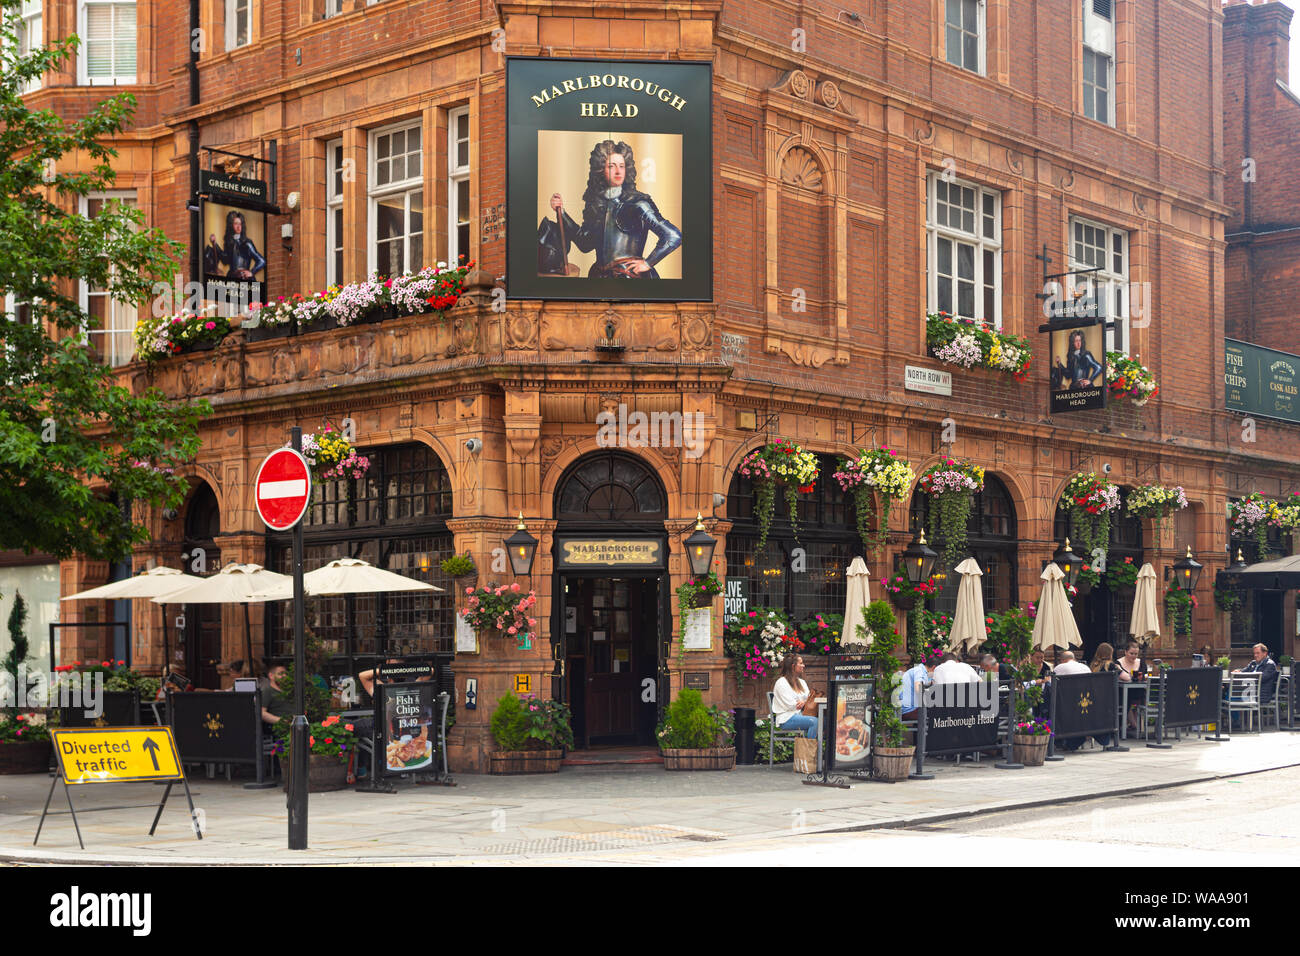 London/Großbritannien - 18. Juli 2019: Marlborough Head gastronomische Kneipe auf dem Schnittpunkt der North Audley Street und die North Row in Mayfair Stockfoto